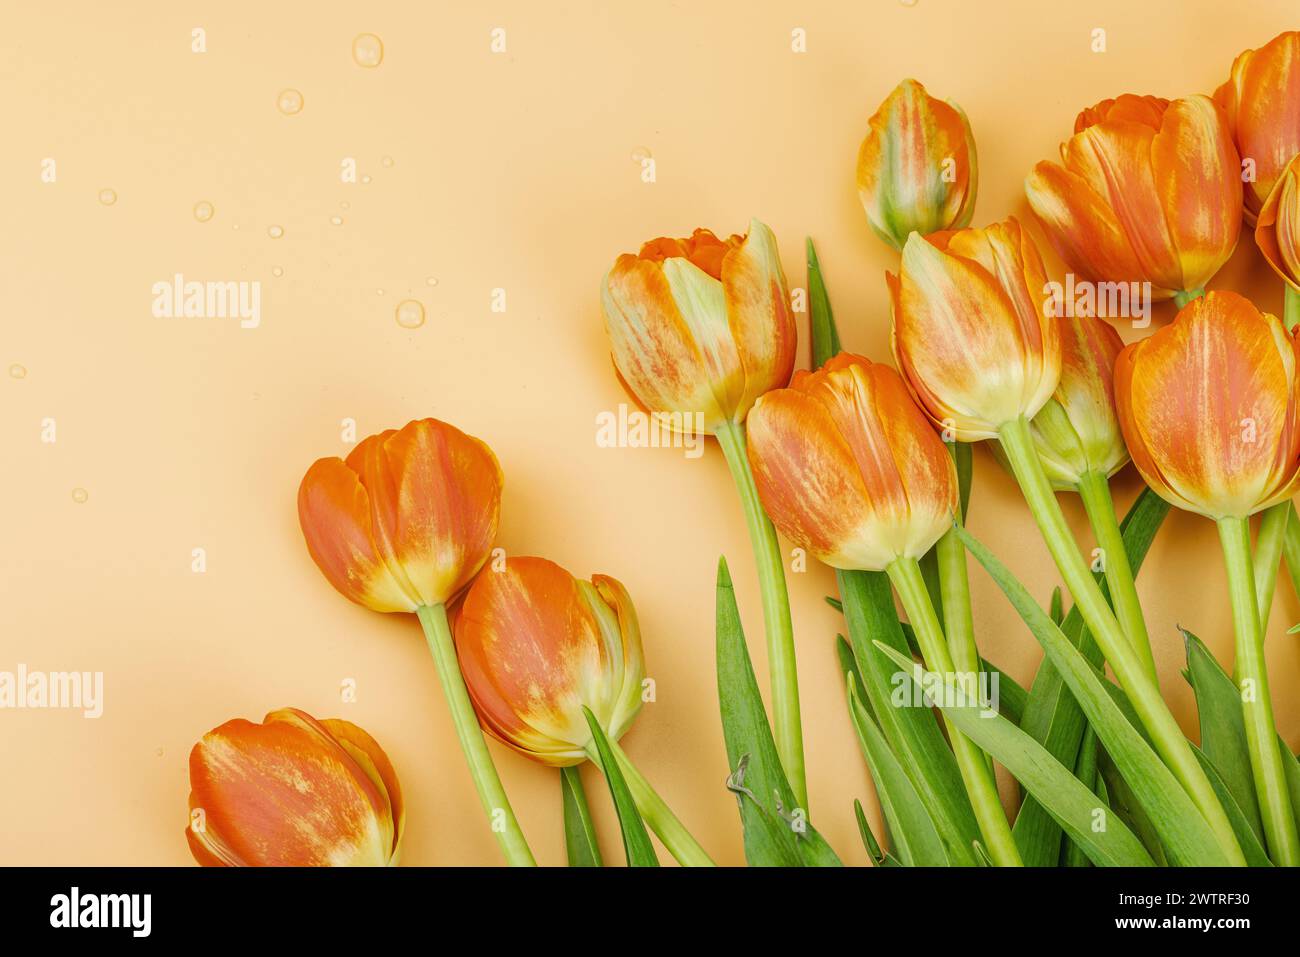 Leuchtend orange Tulpen auf einem pastellfarbenen Aprikosenhintergrund. Festliches Konzept für Muttertag oder Valentinstag. Grußkarte, Osterliege, beste Wünsche, Stockfoto